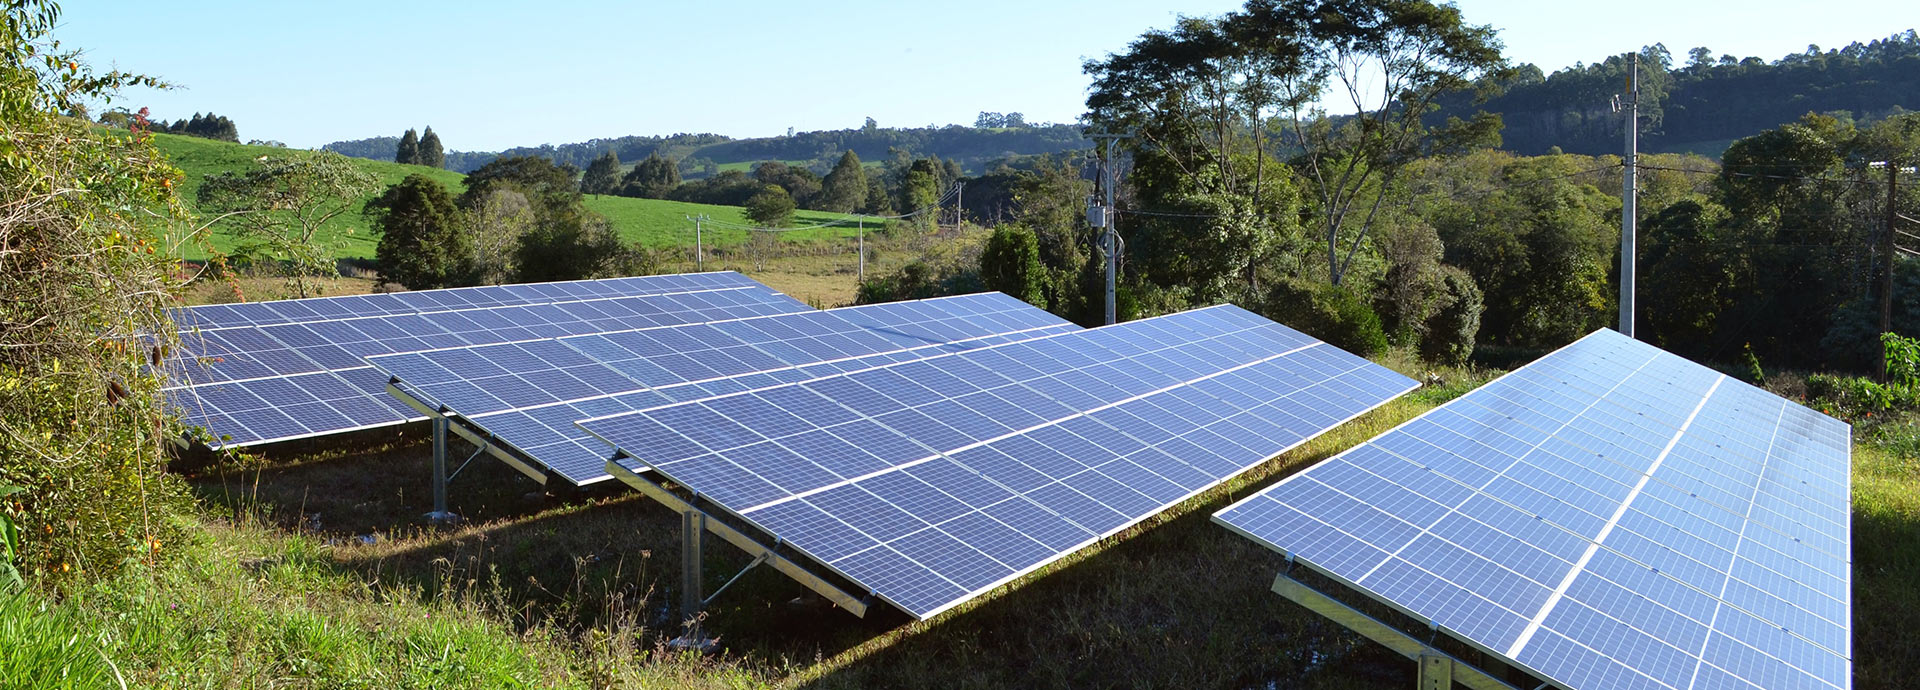 Solar panels and solar collectors